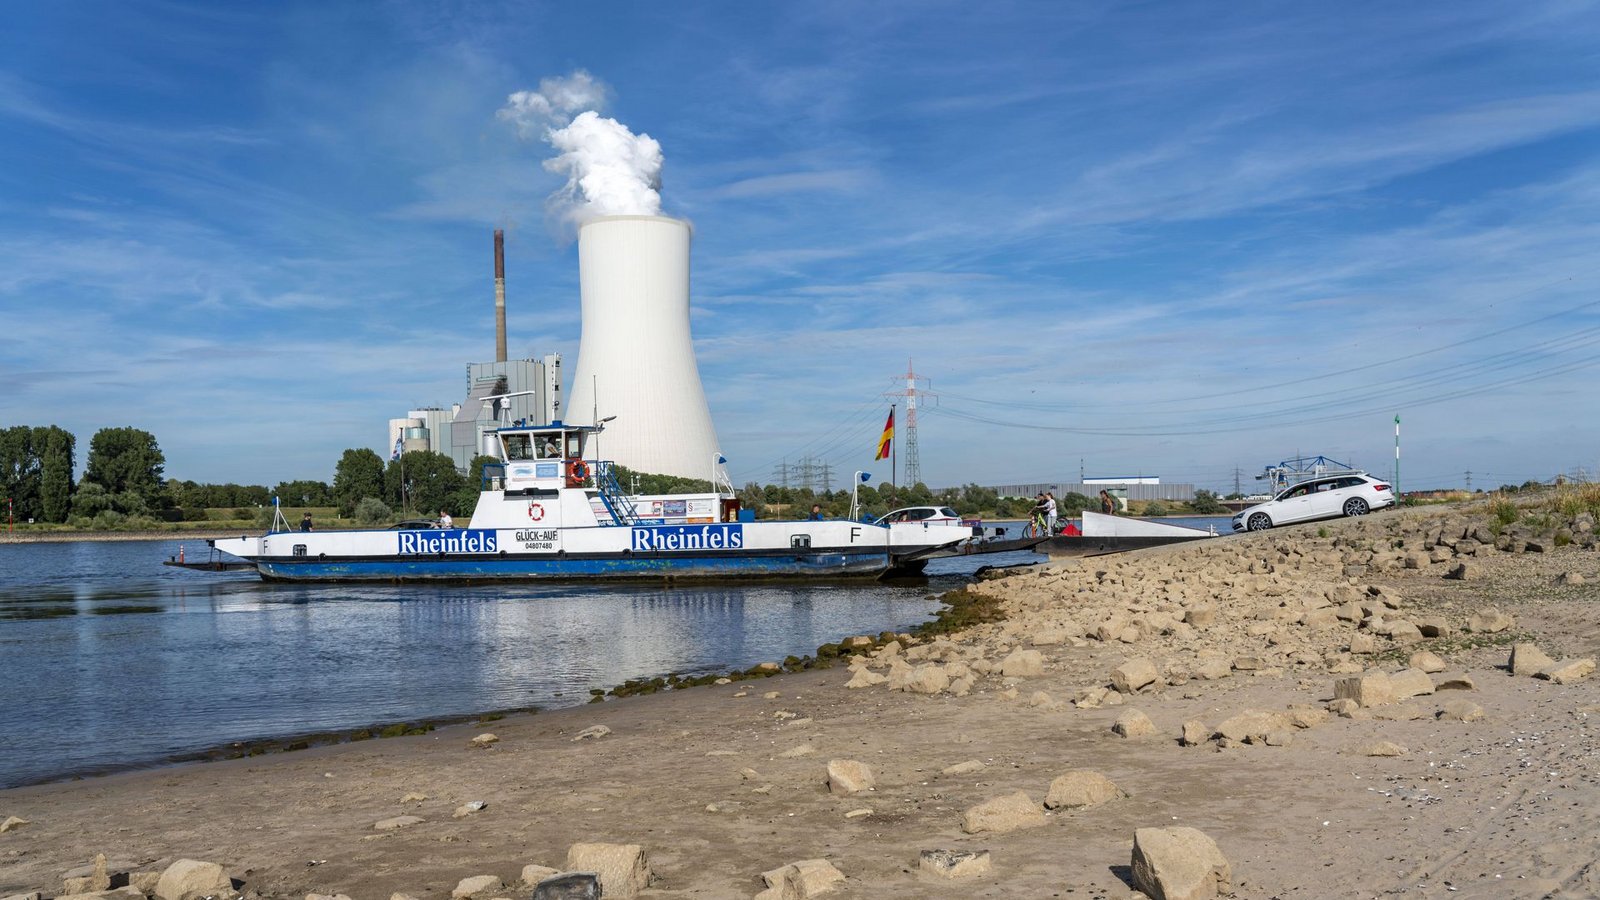 Der Rhein führt wenig Wasser – das hat Folgen für die Binnenschifffahrt und die Energieversorger.Foto: Imago//Jochen Tack